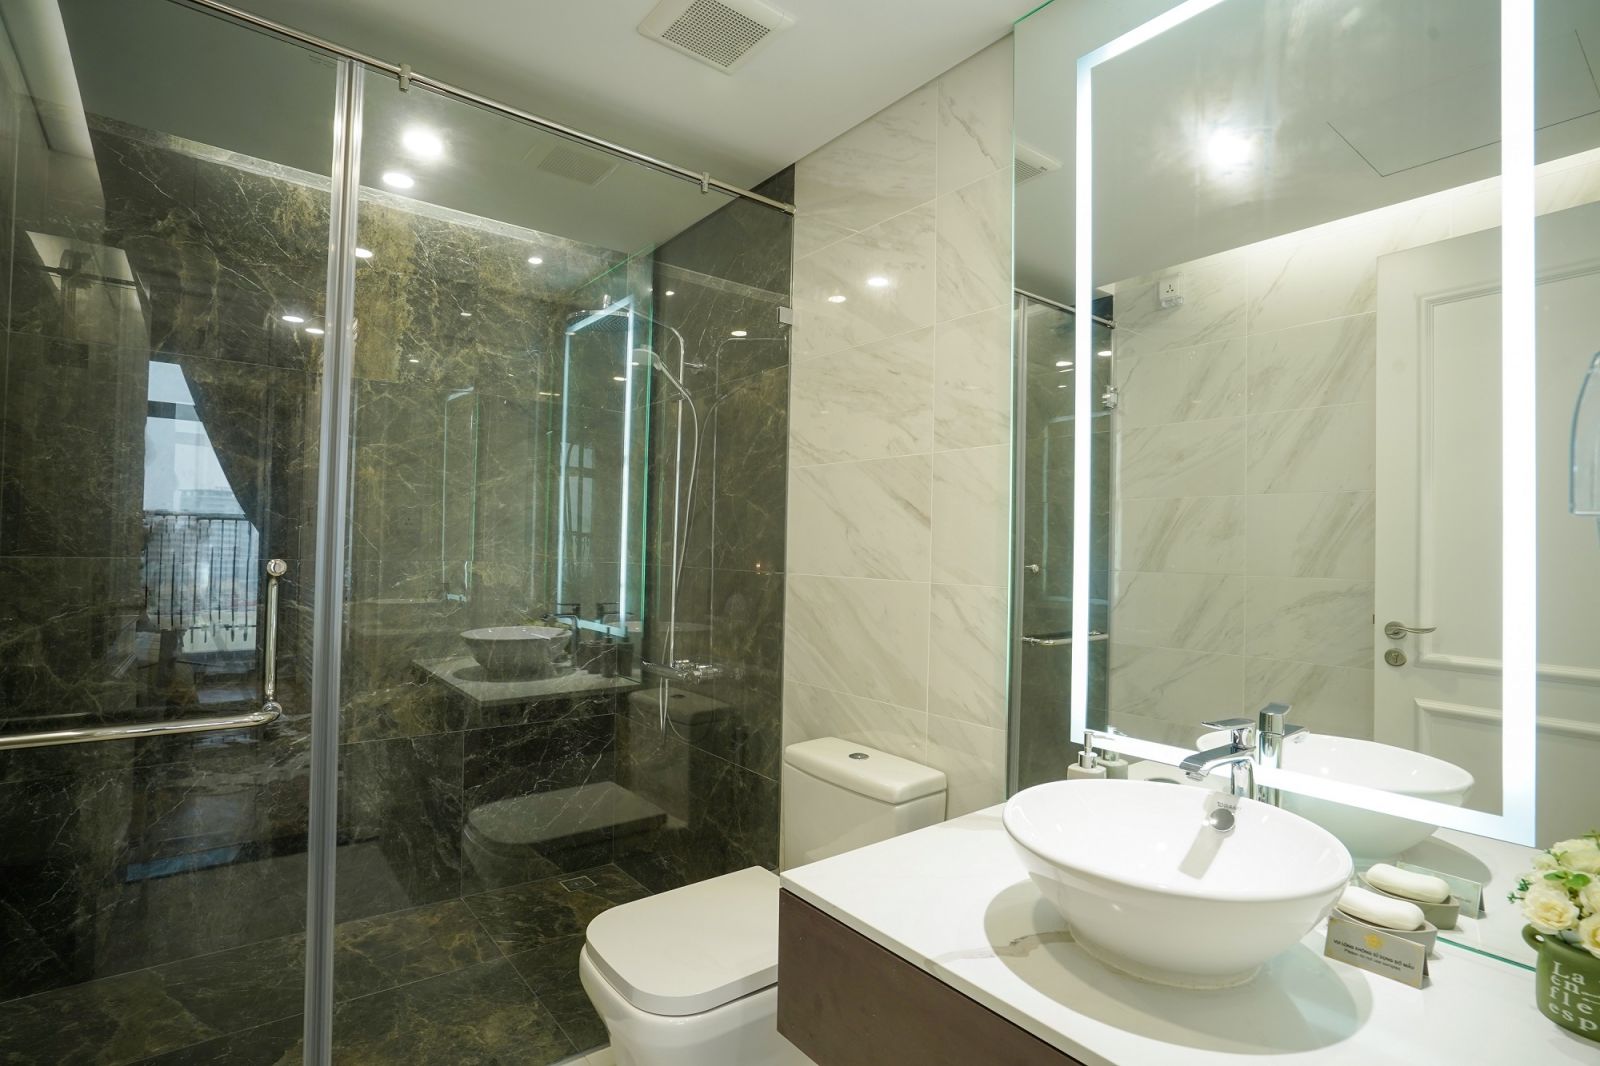 Nhà vệ sinh được trang bị thiết bị vệ sinh sử dụng phần sứ Bravat, sen vòi Hangrohe